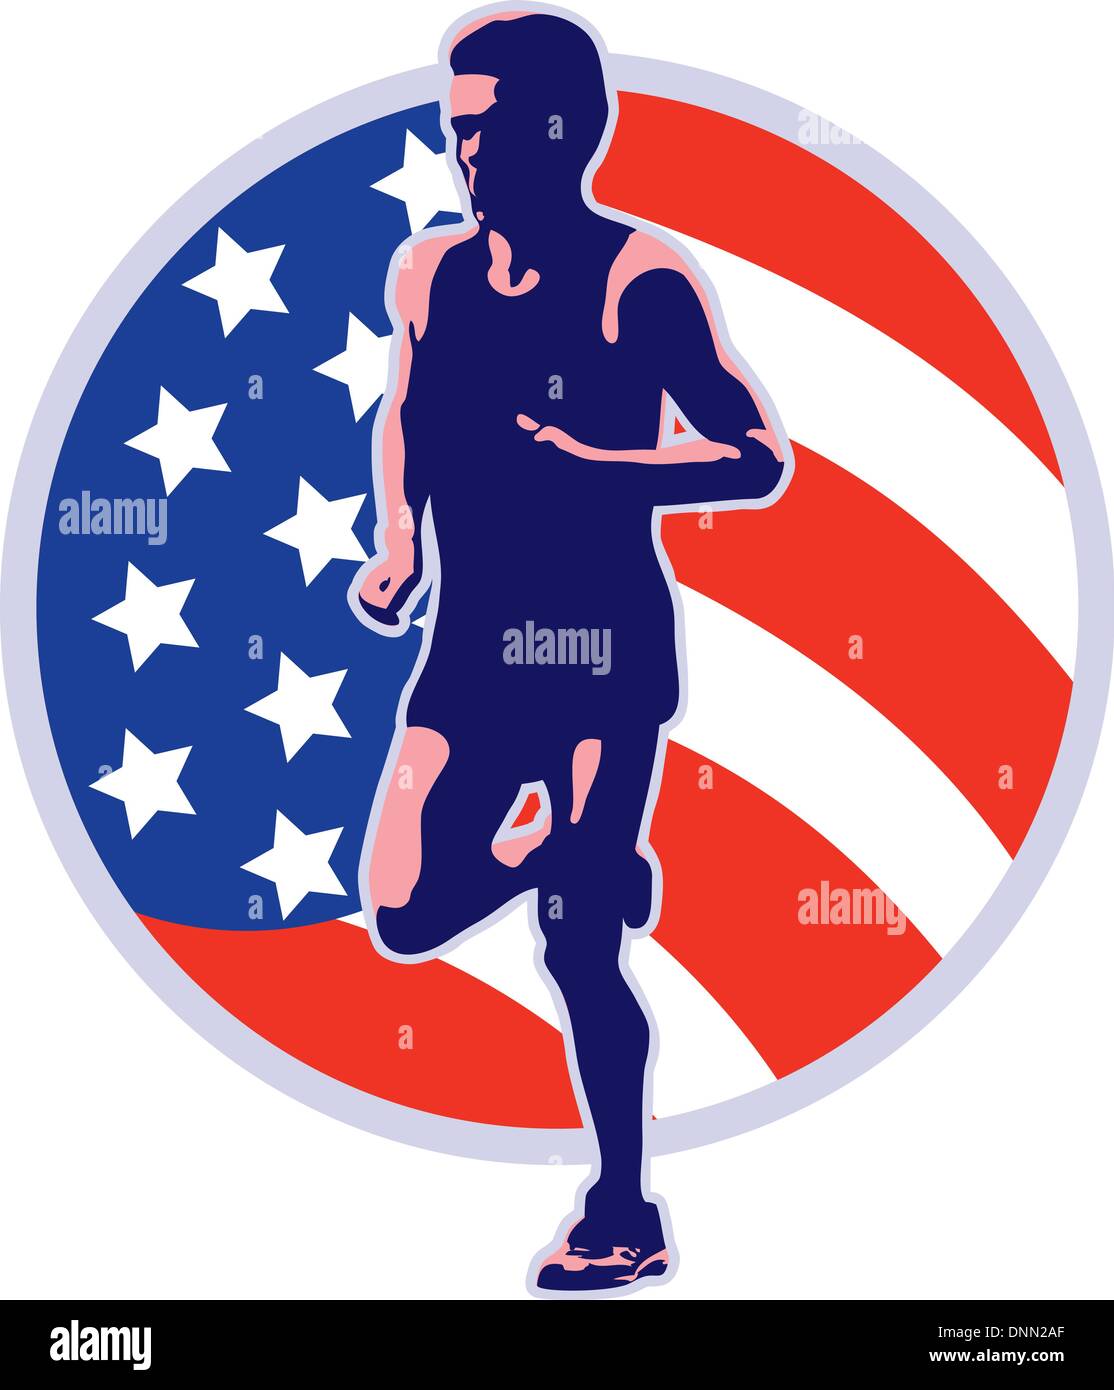 Illustrazione di un maratoneta in esecuzione il jogging con American a stelle e strisce flag impostato all'interno del cerchio isolato su sfondo bianco fatto in stile retrò Illustrazione Vettoriale